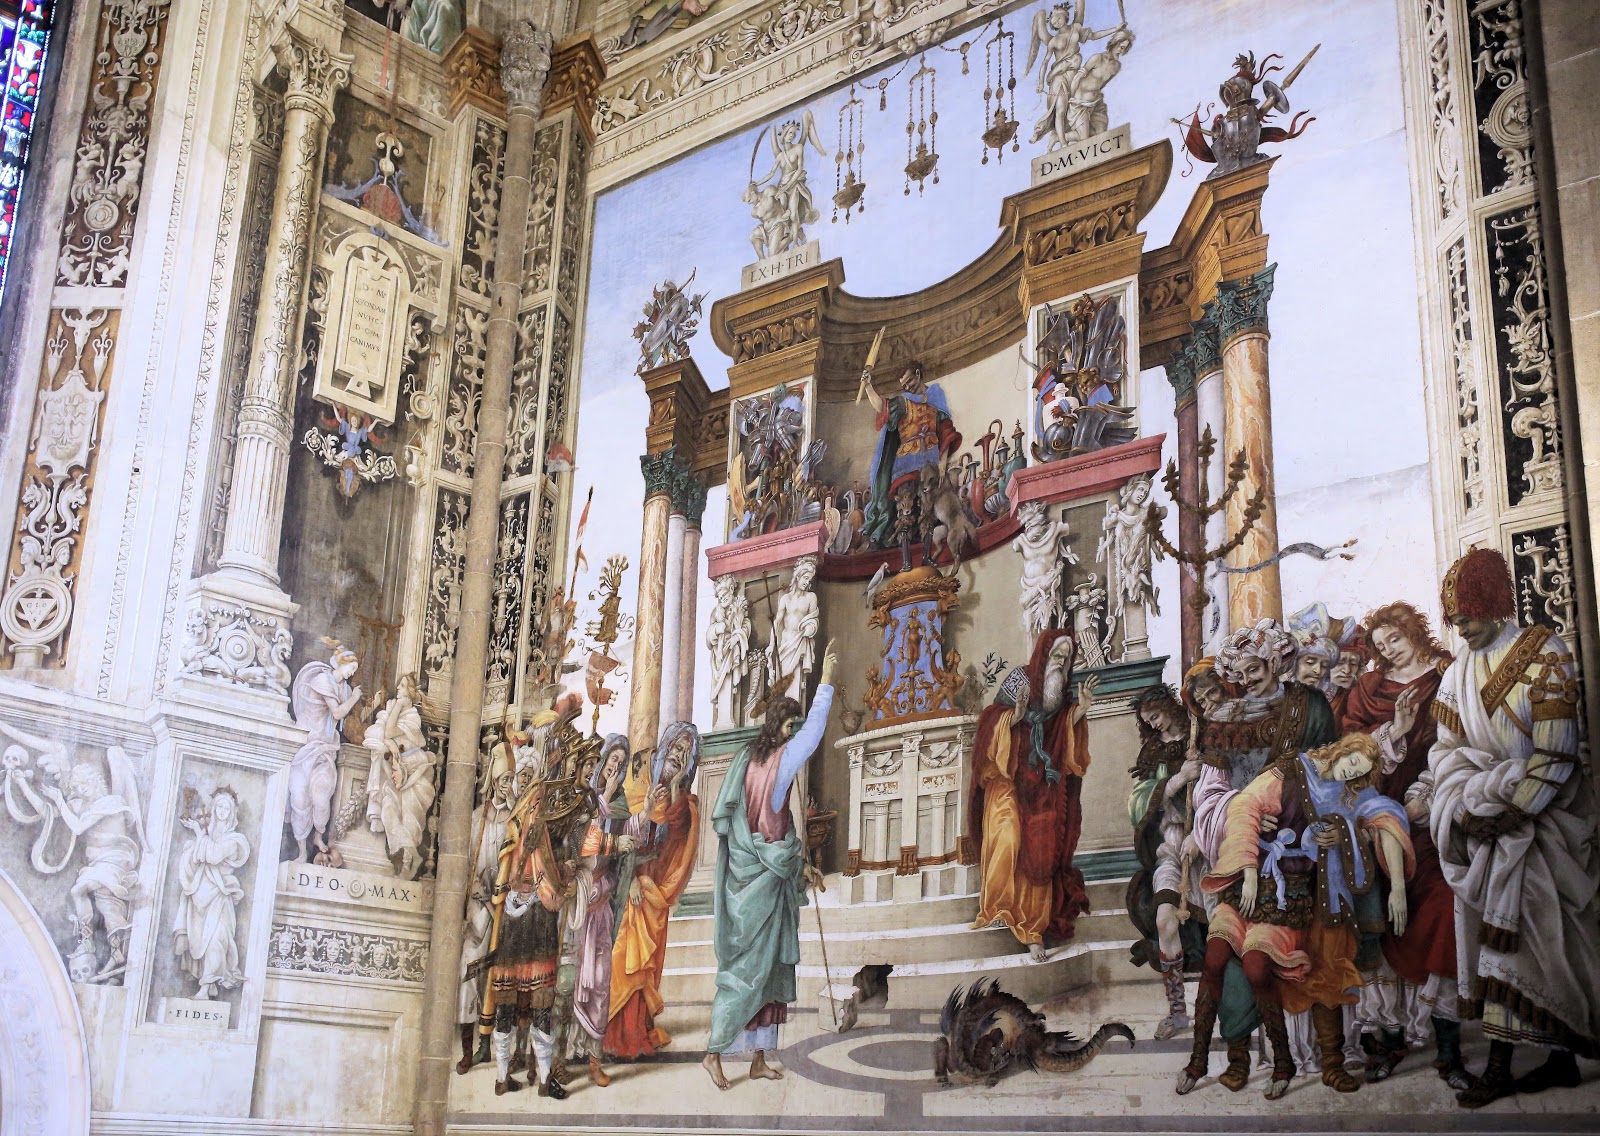 Filippino+Lippi-1457-1504 (13).jpg